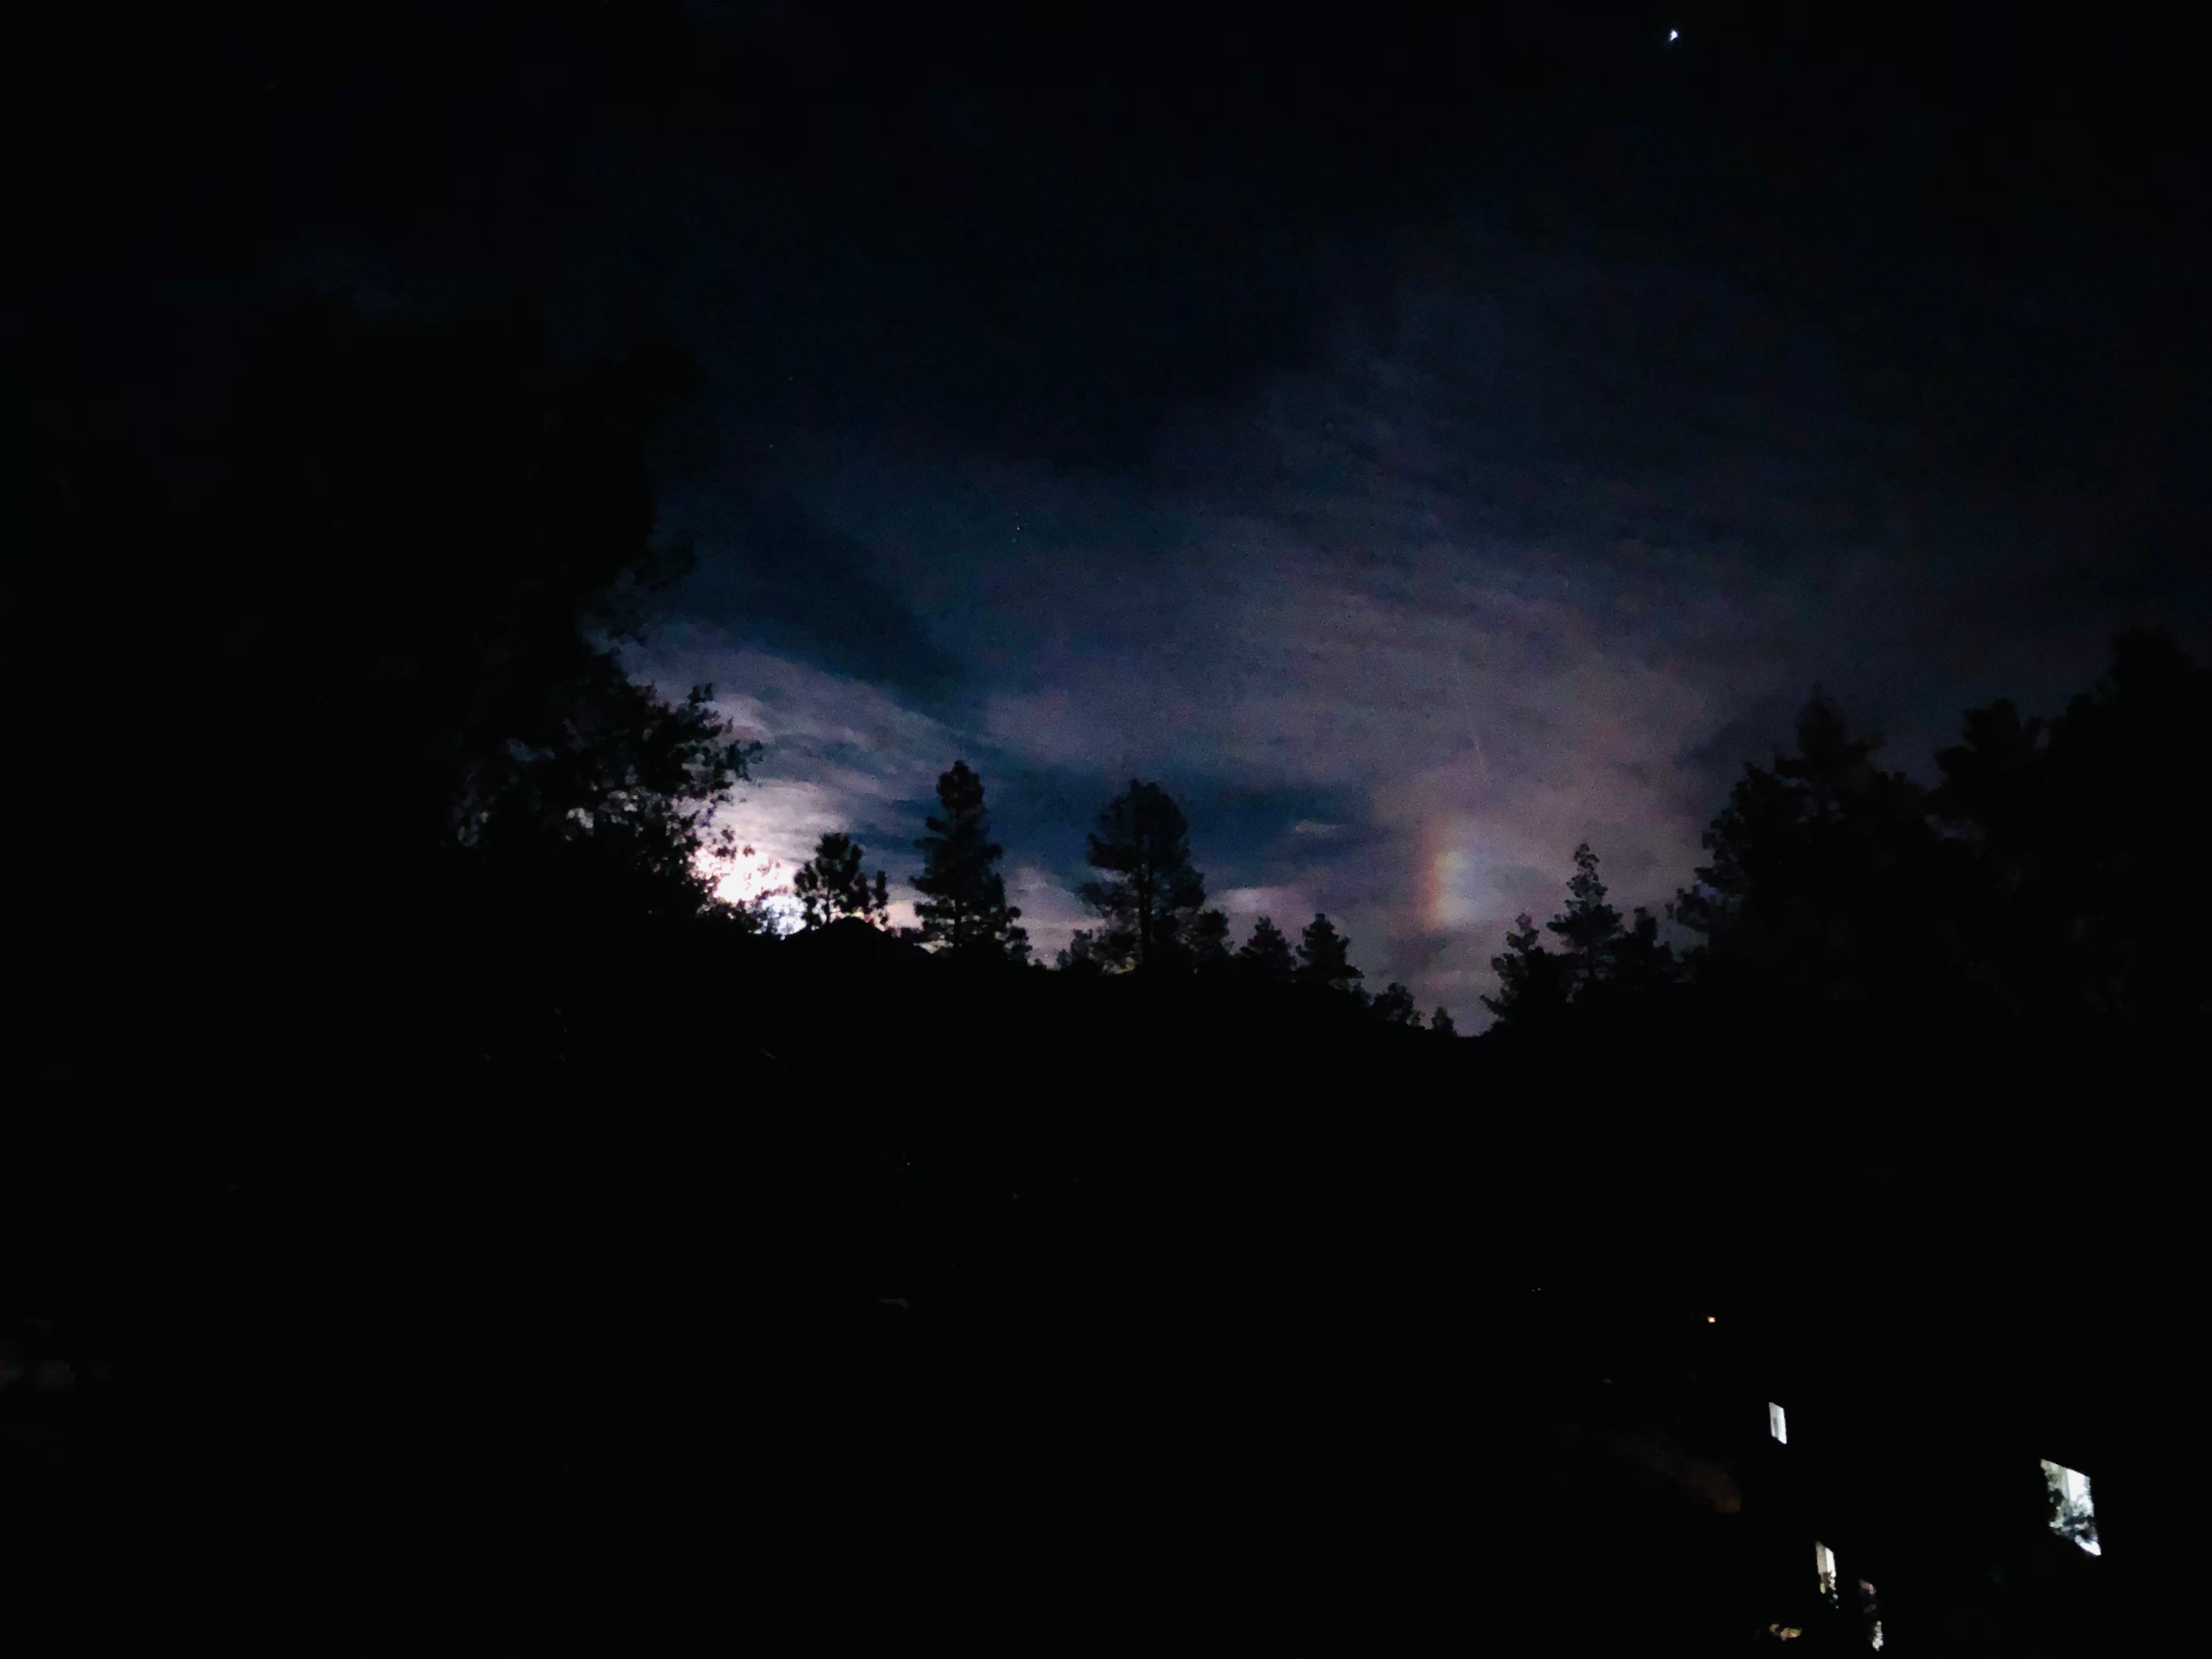 Ein Bild eines „Mondbogens“, eines Regenbogens, der aus dem Mond entsteht, nachts durch die Bäume und Wolken.